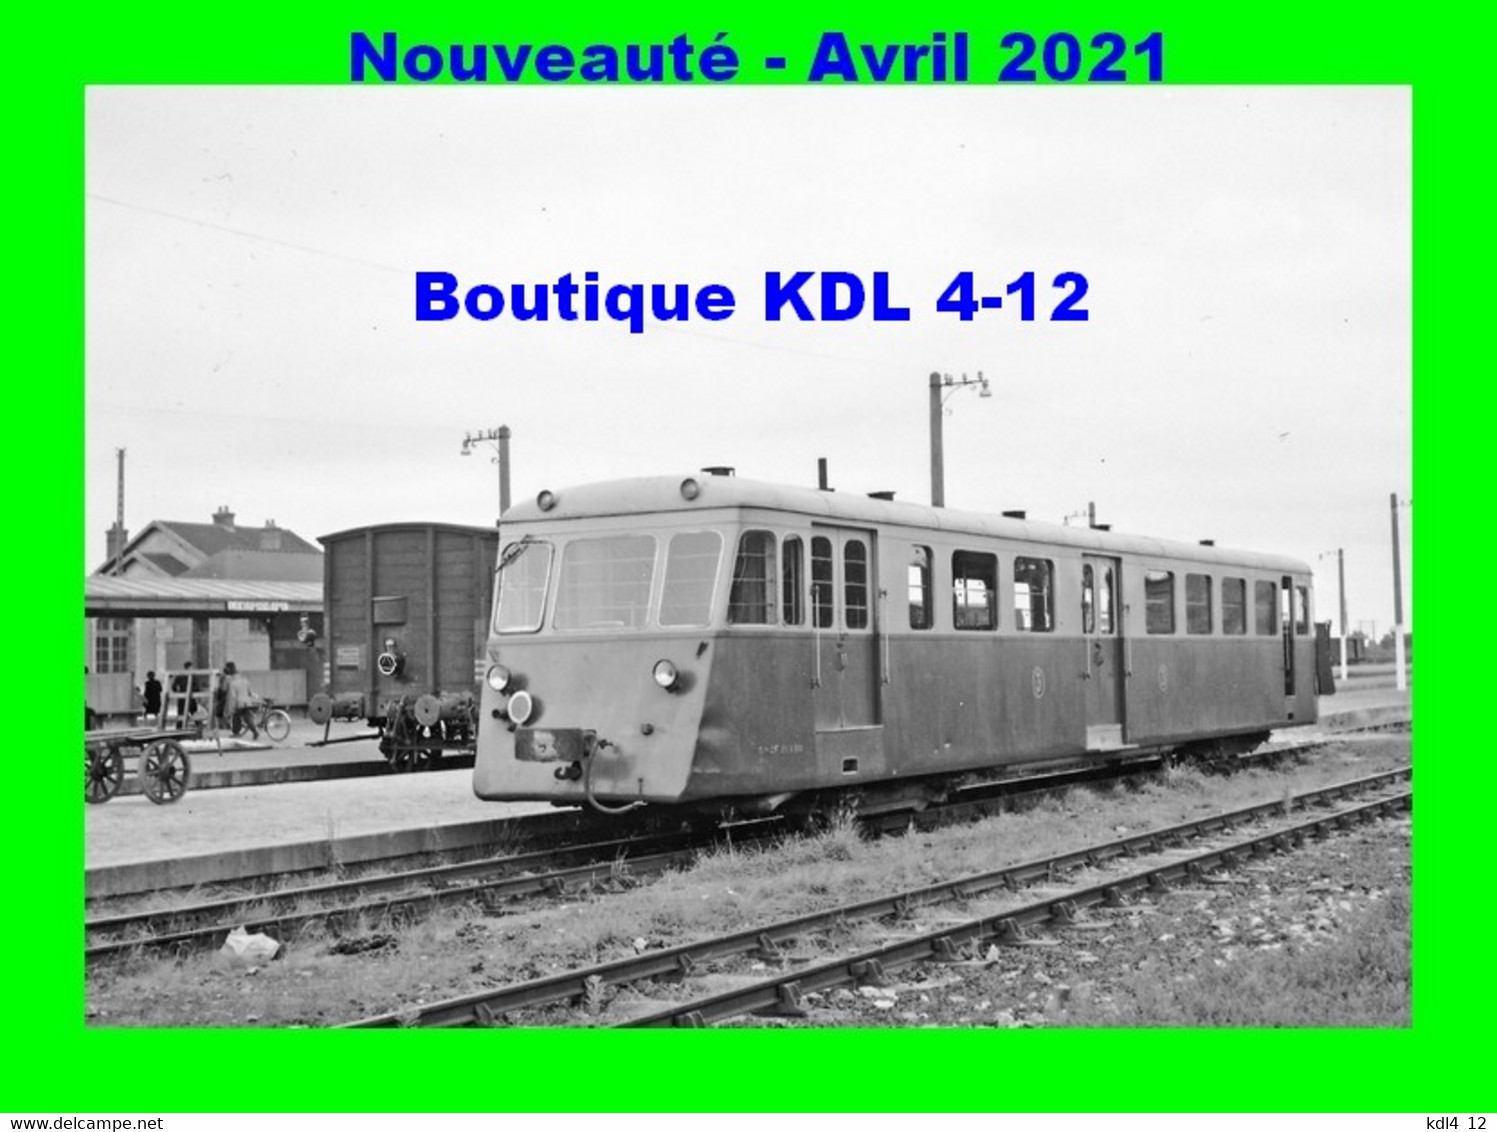 AL 714 - Autorail De Dion Bouton OC 2 En Gare De La BROHINIERE Commune De MONTAUBAN DE BRETAGNE  - Ille Et Vilaine - RB - Autres & Non Classés